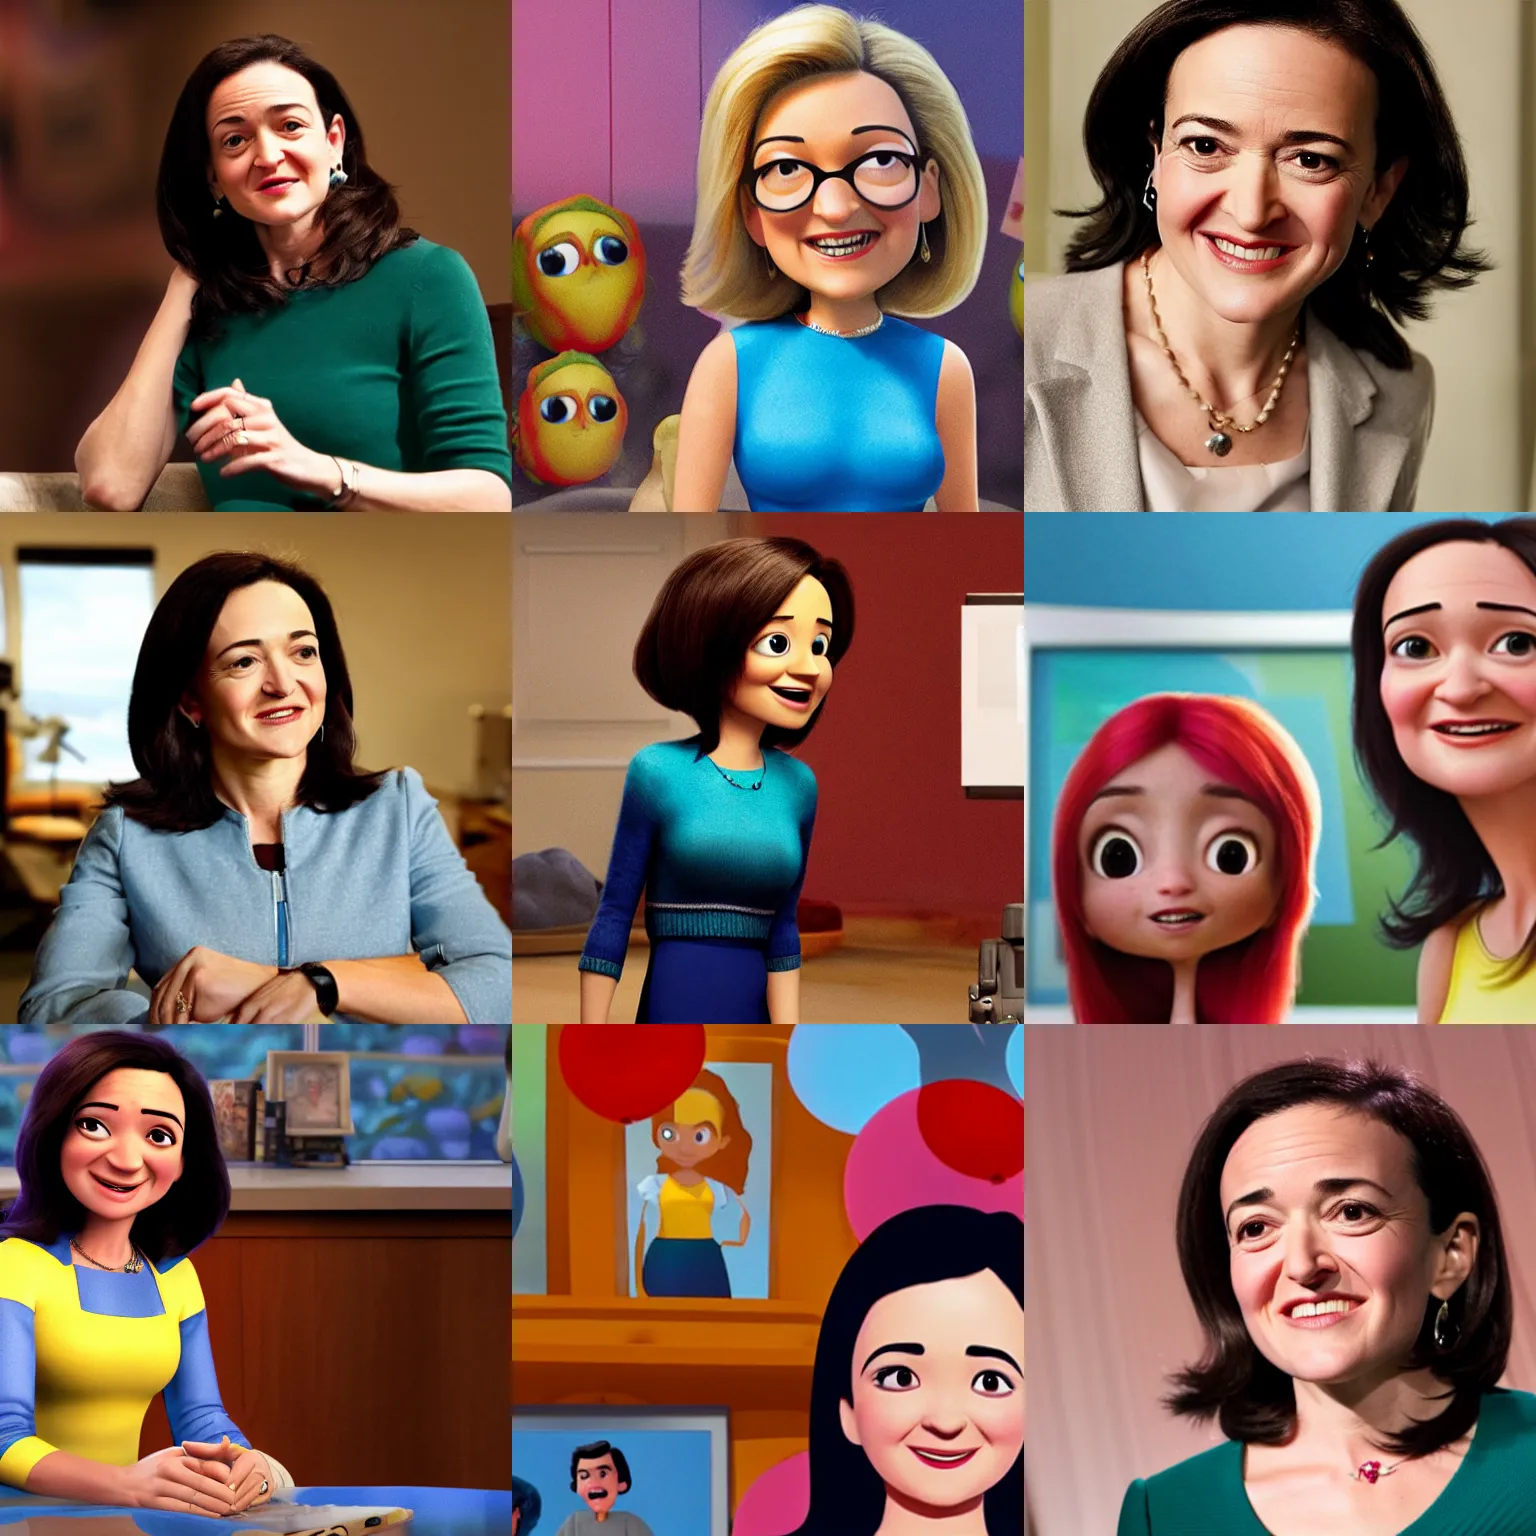 Prompt: Sheryl Sandberg in new Pixar movie